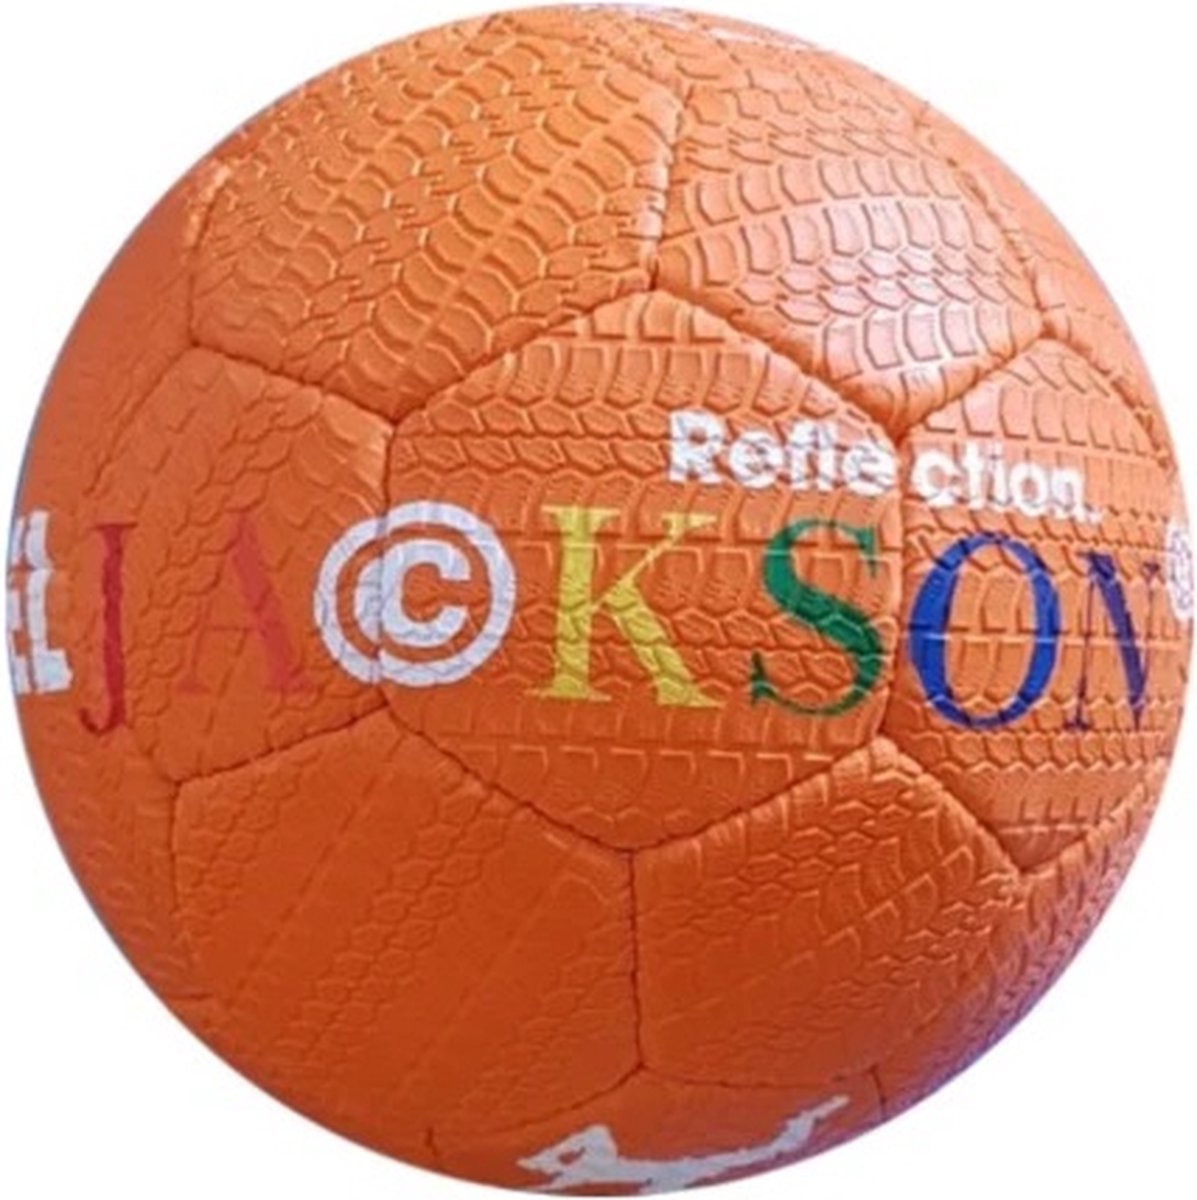 EL JACKSON BALL MOUNTAIN ORANGE - STRAAT BAL - FREESTYLE VOETBAL - STREET BALL - STRAATVOETBAL - ULTIEME GRIP BAL